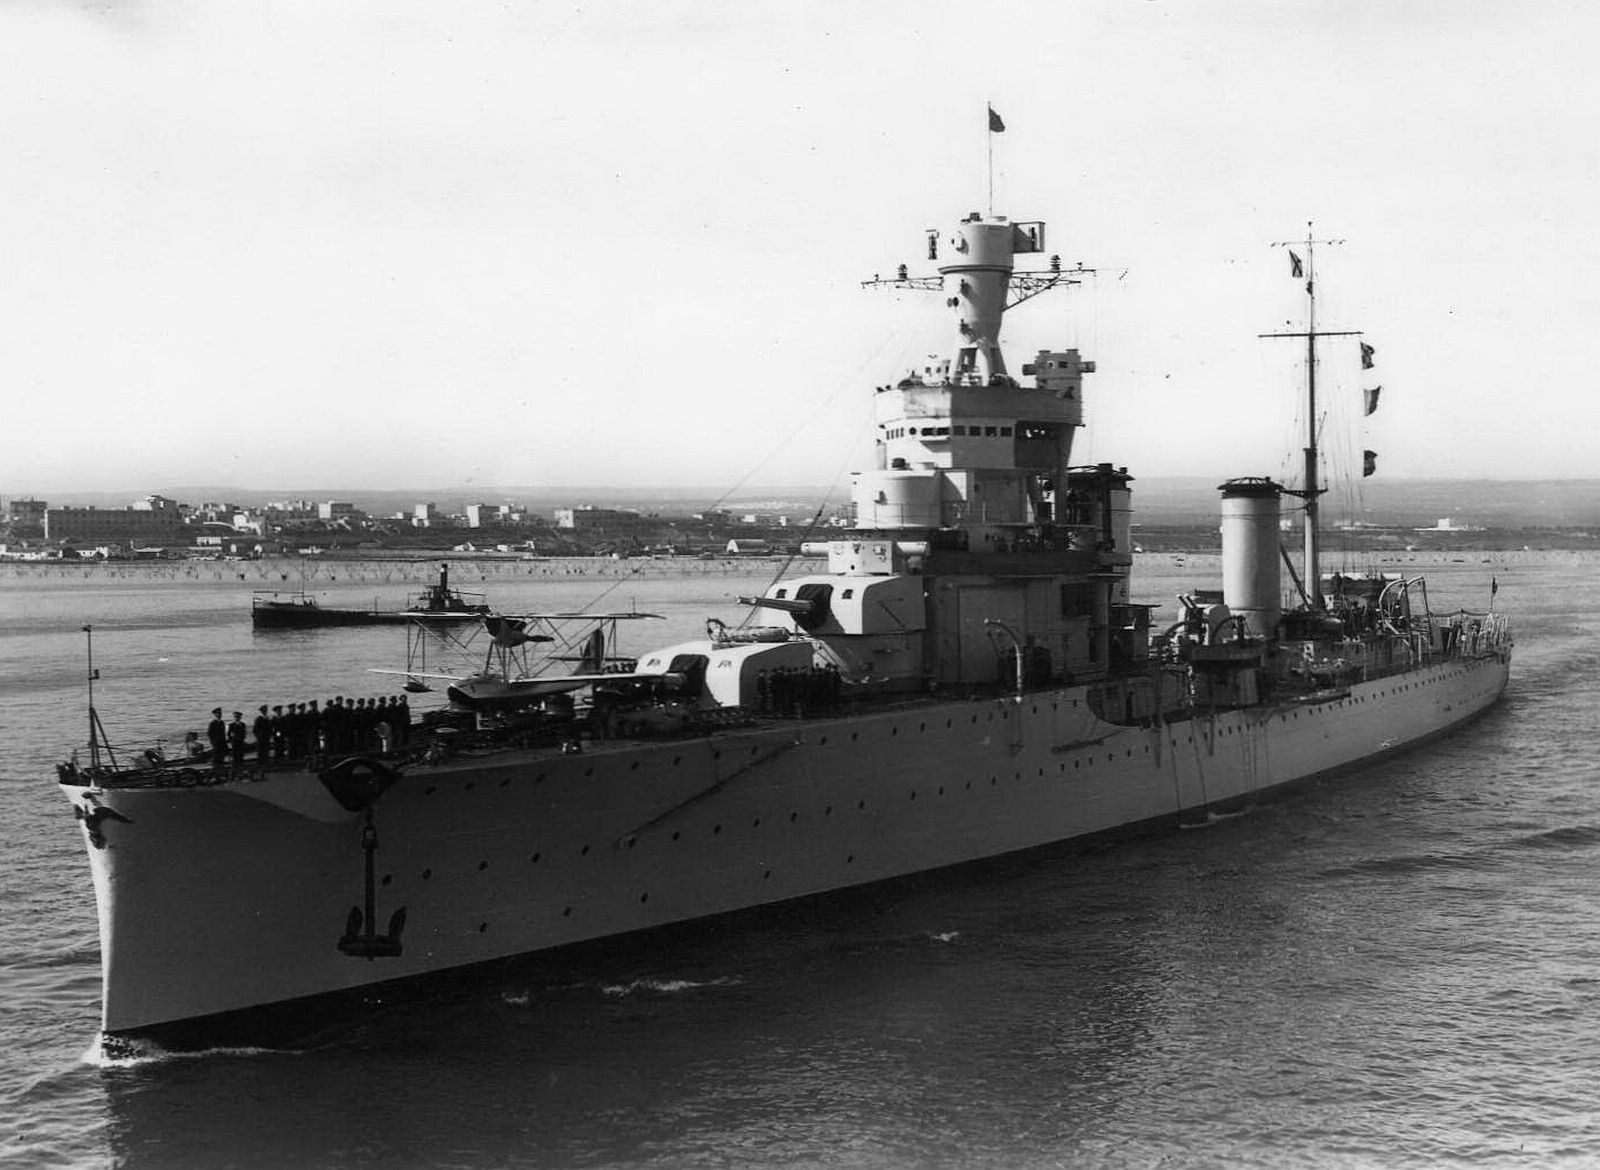 The Italian Giussano-class cruiser "Alberto da Giussano"